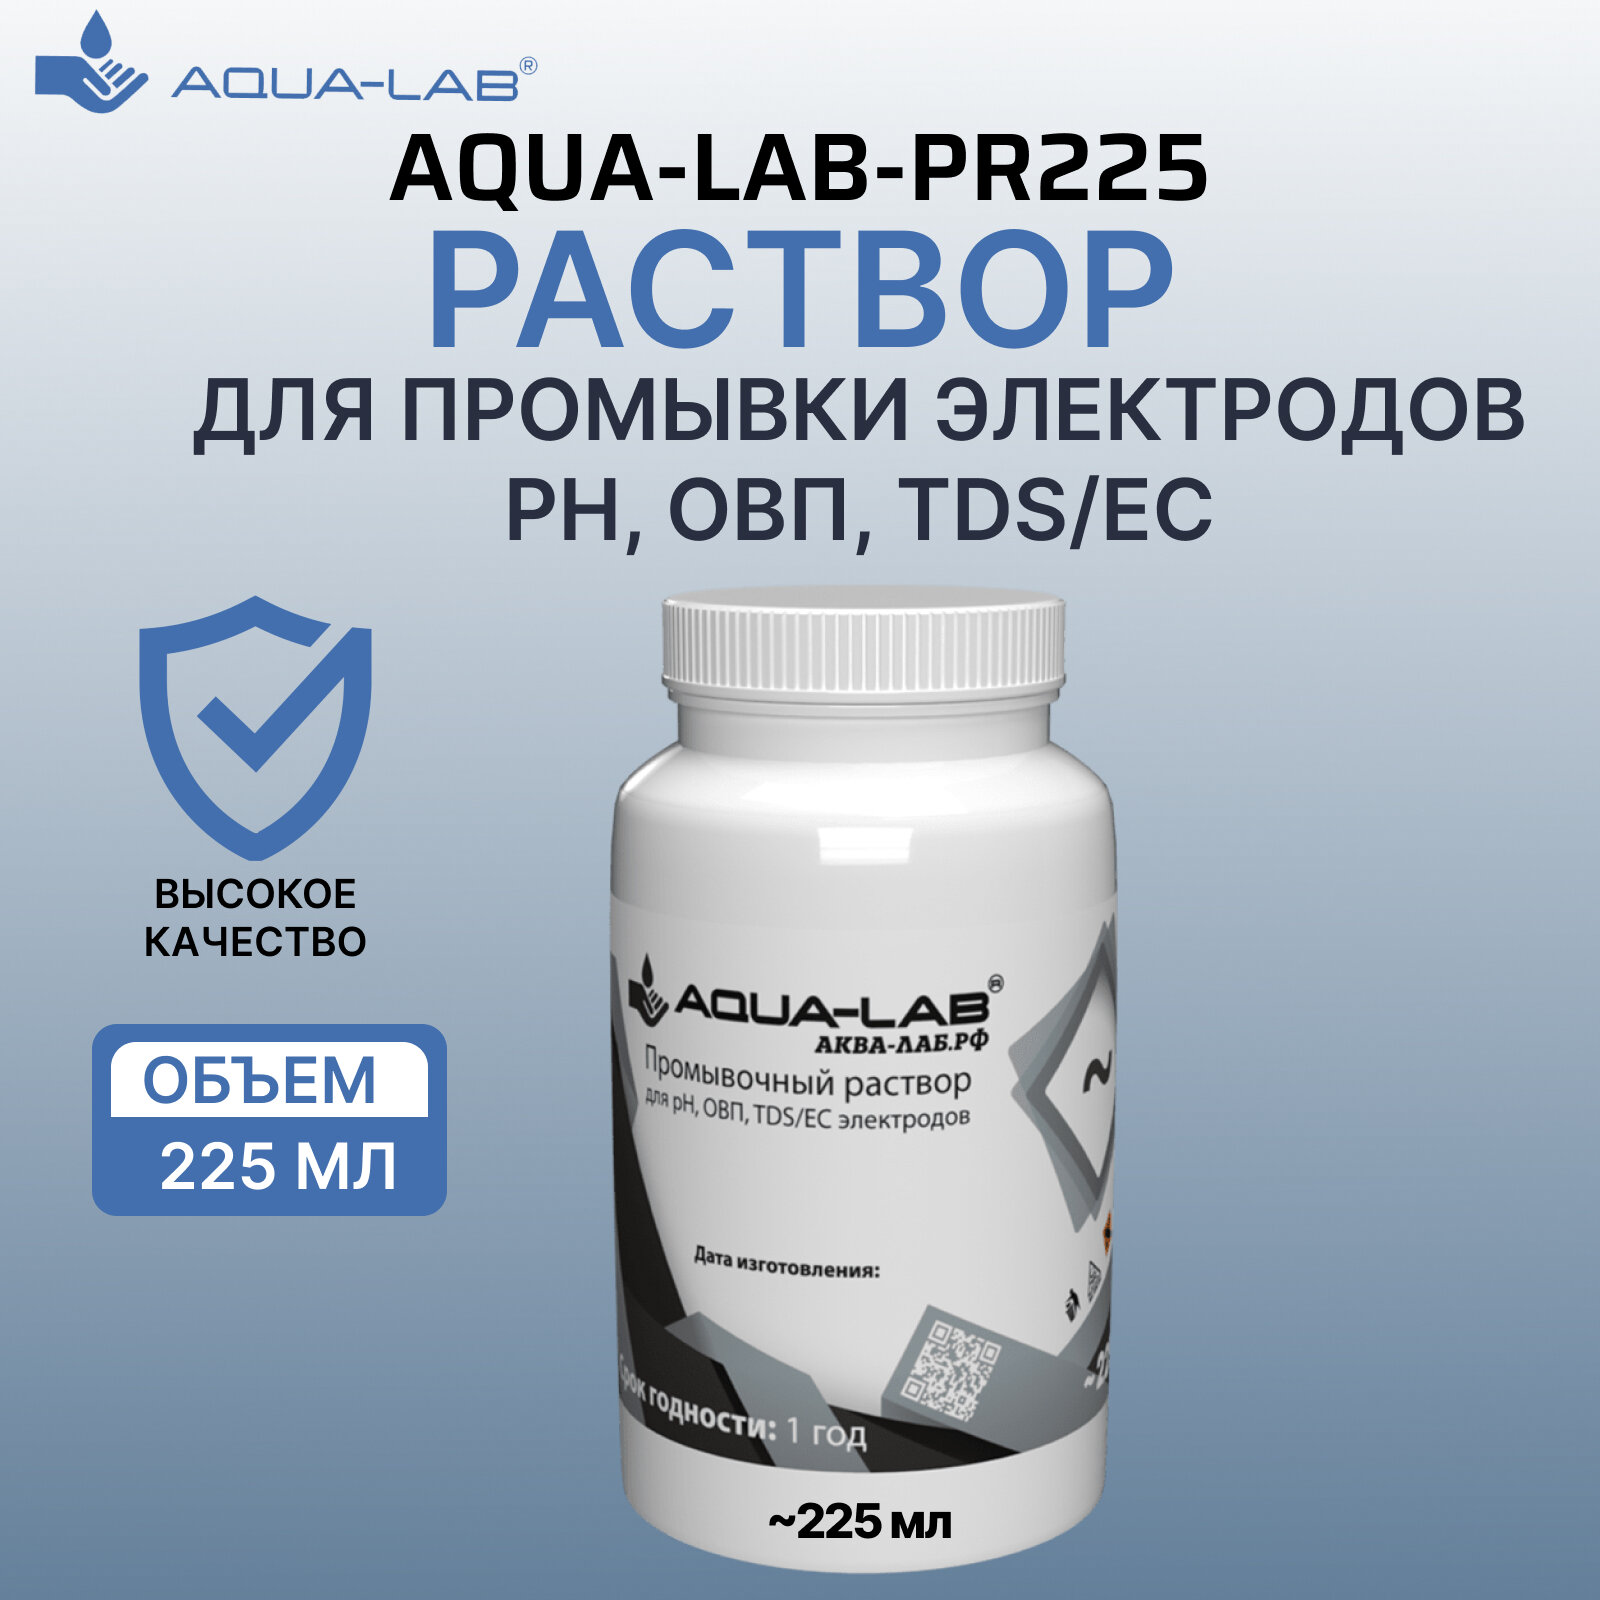 Раствор AQUA-LAB для промывки электродов pH ОВП TDS/EC 225 мл